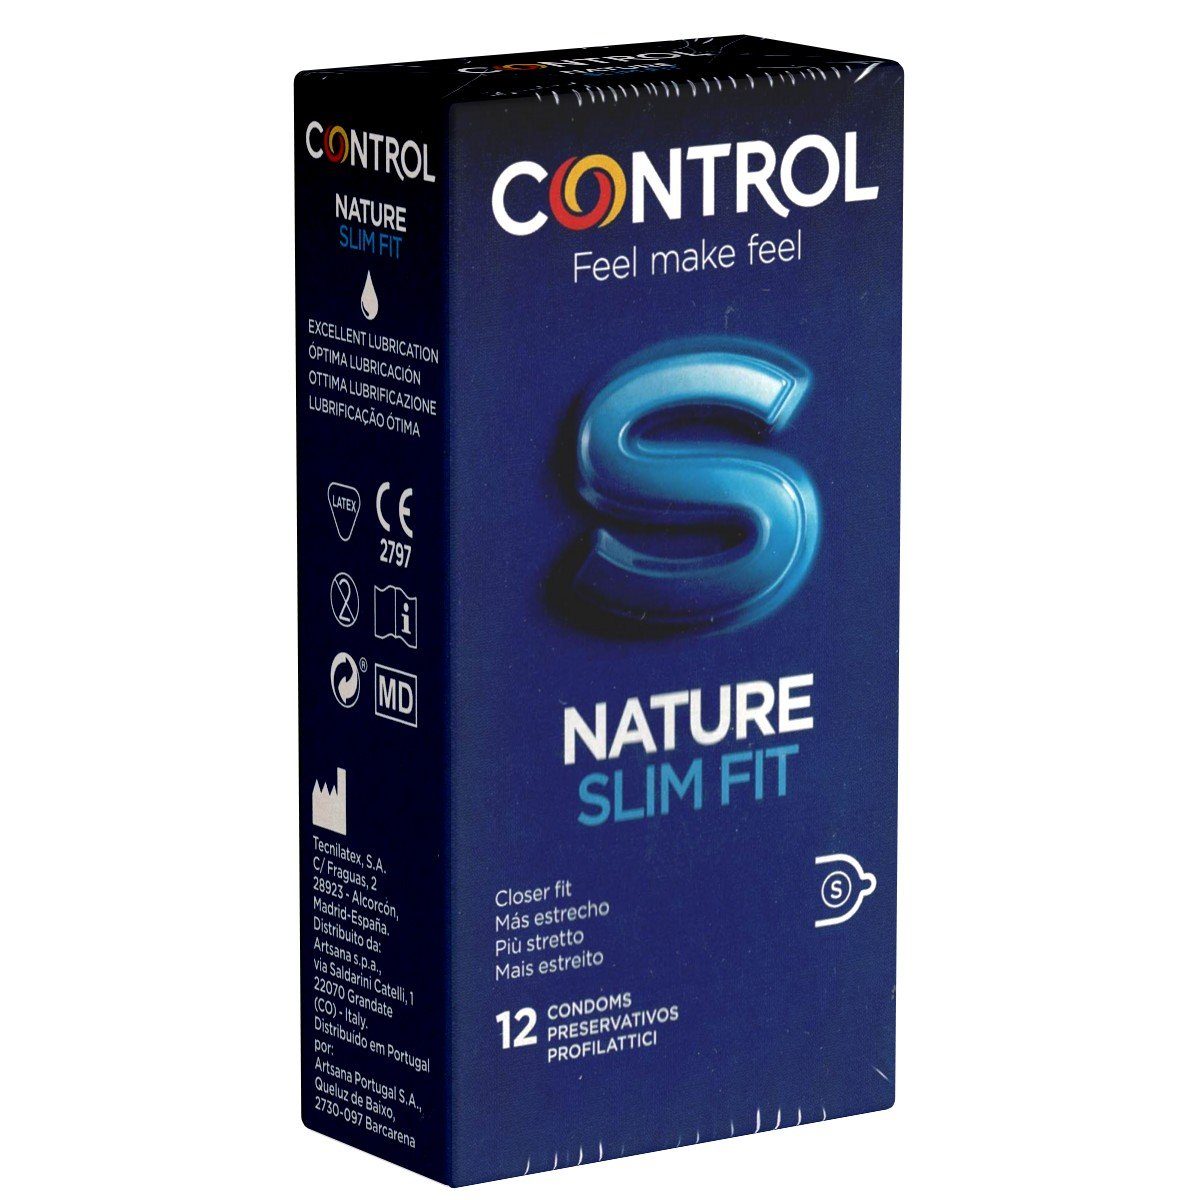 CONTROL CONDOMS Kondome Nature Slim mit, richtig für Vergnügen enges spanische Fit 12 St., Packung Kondome